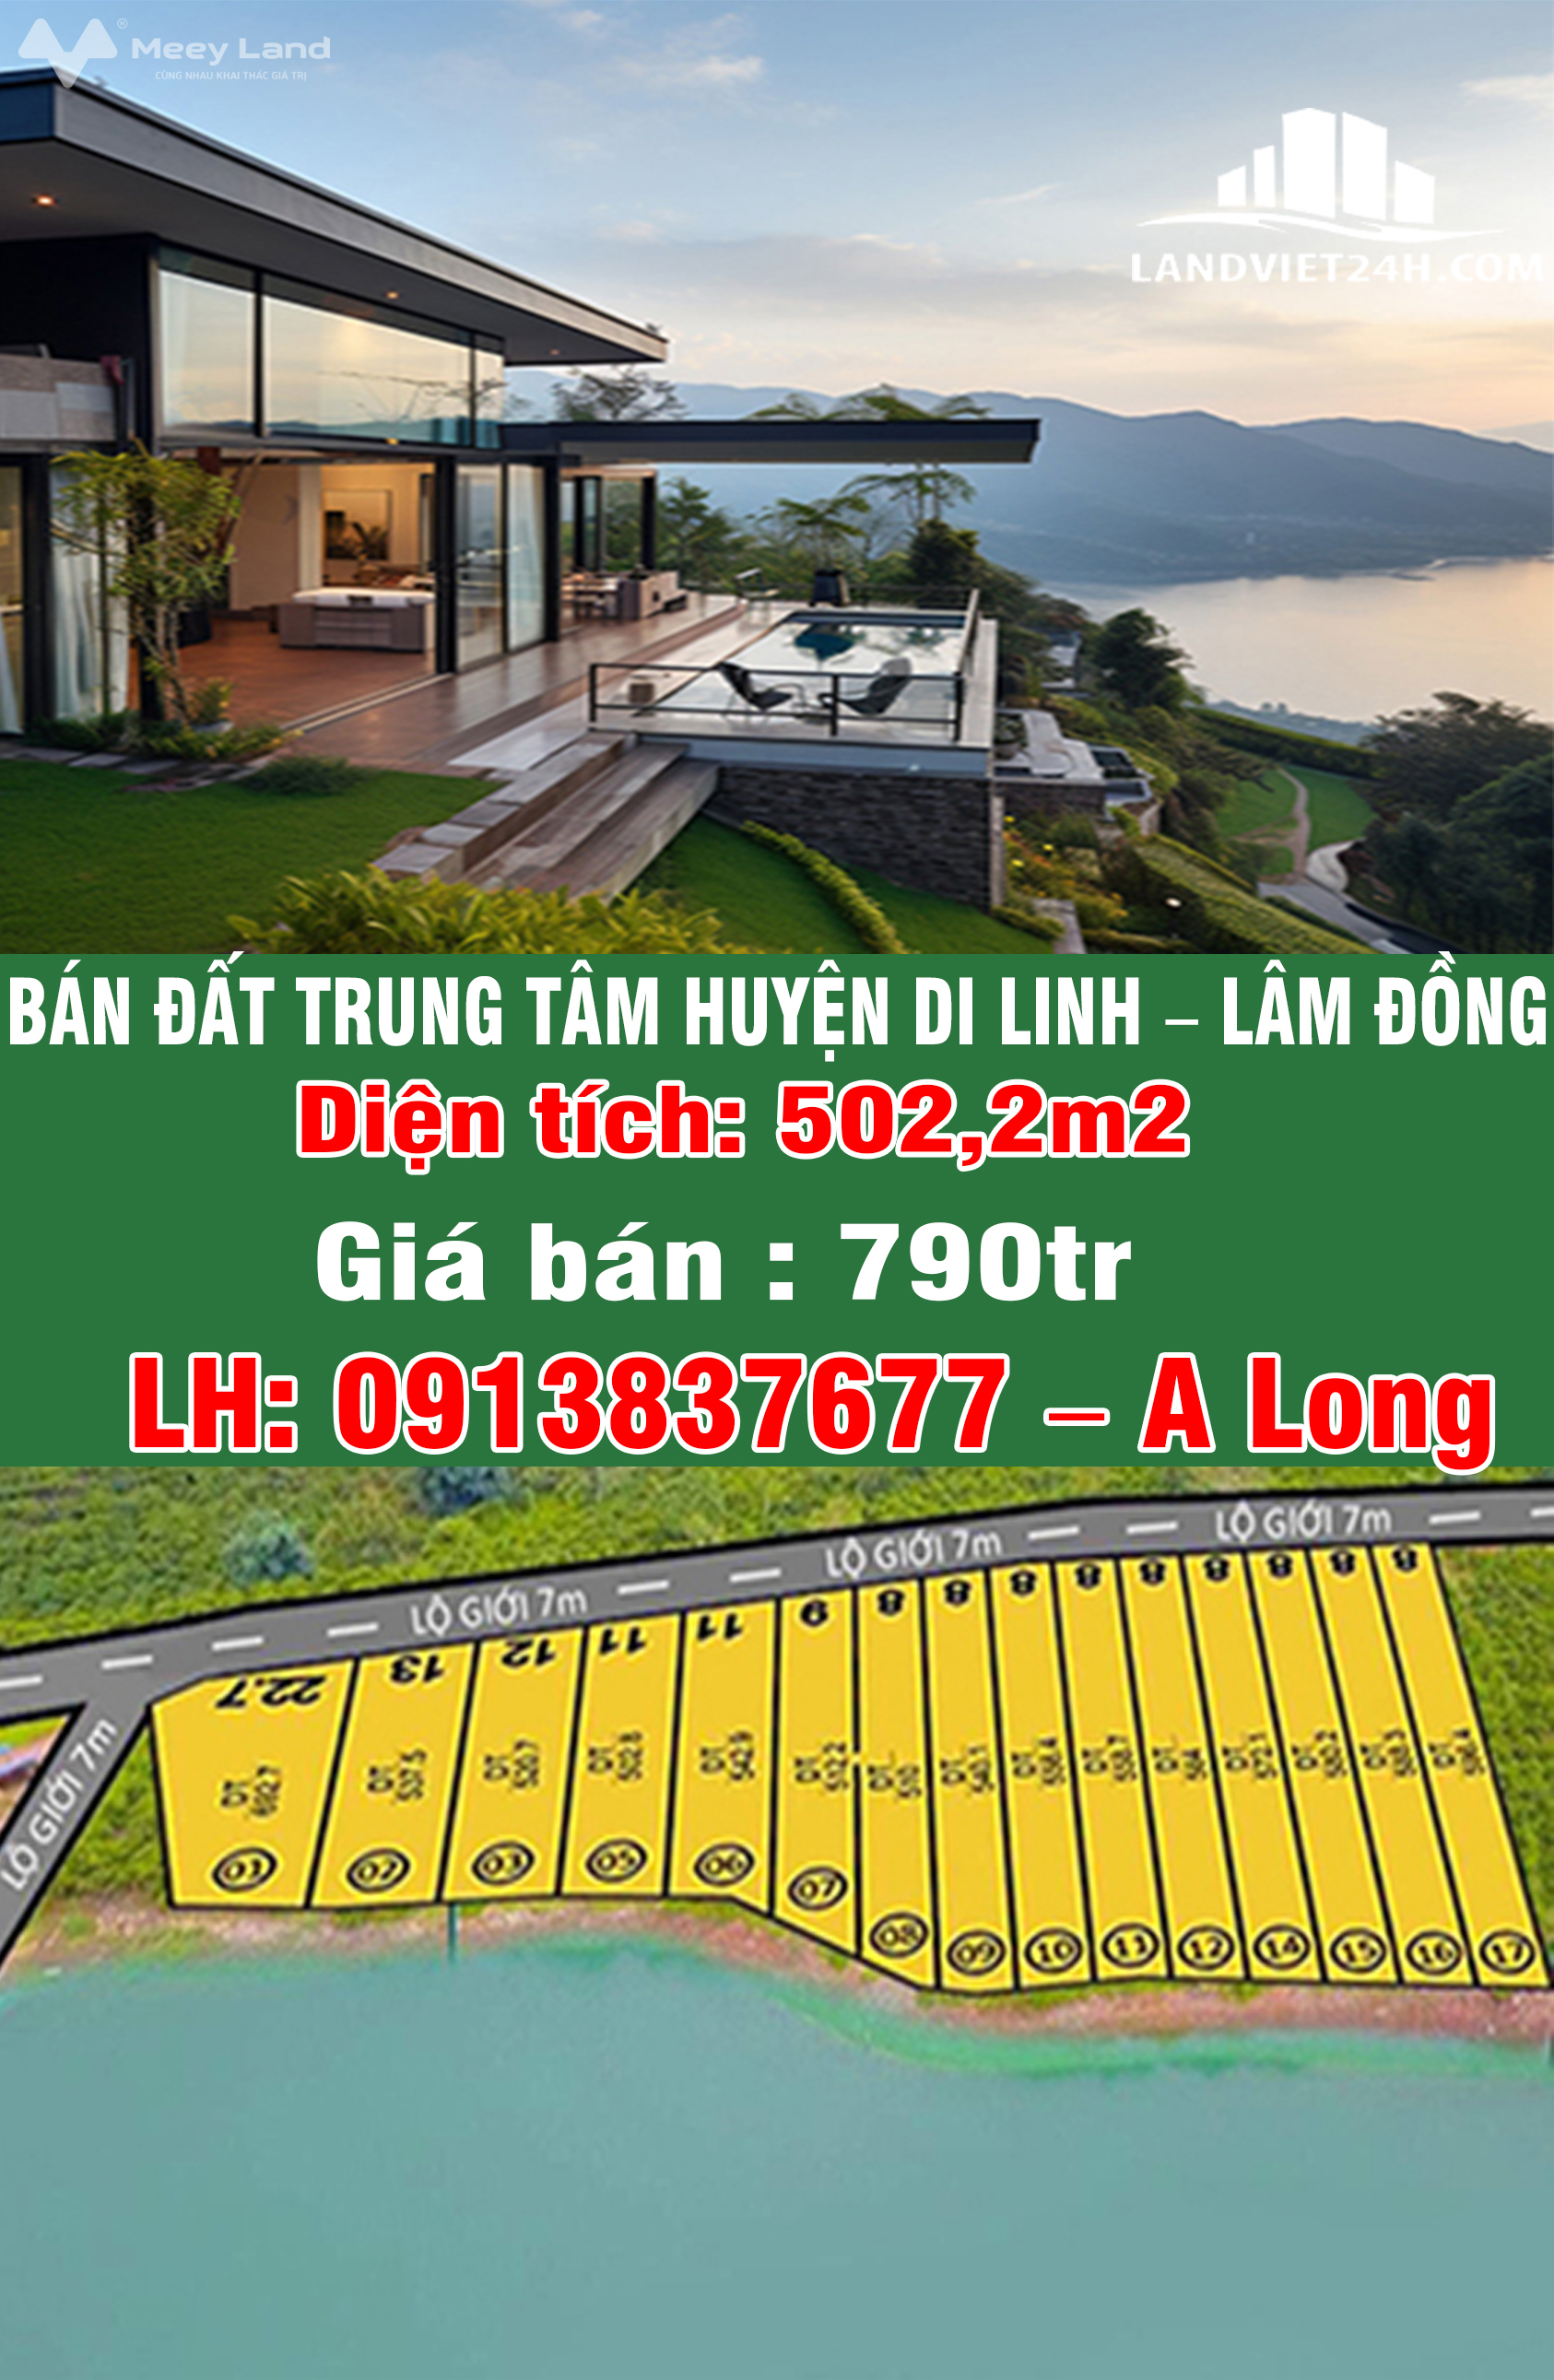 Chính chủ bán đất trung tâm huyện Di Linh, Lâm Đồng-01